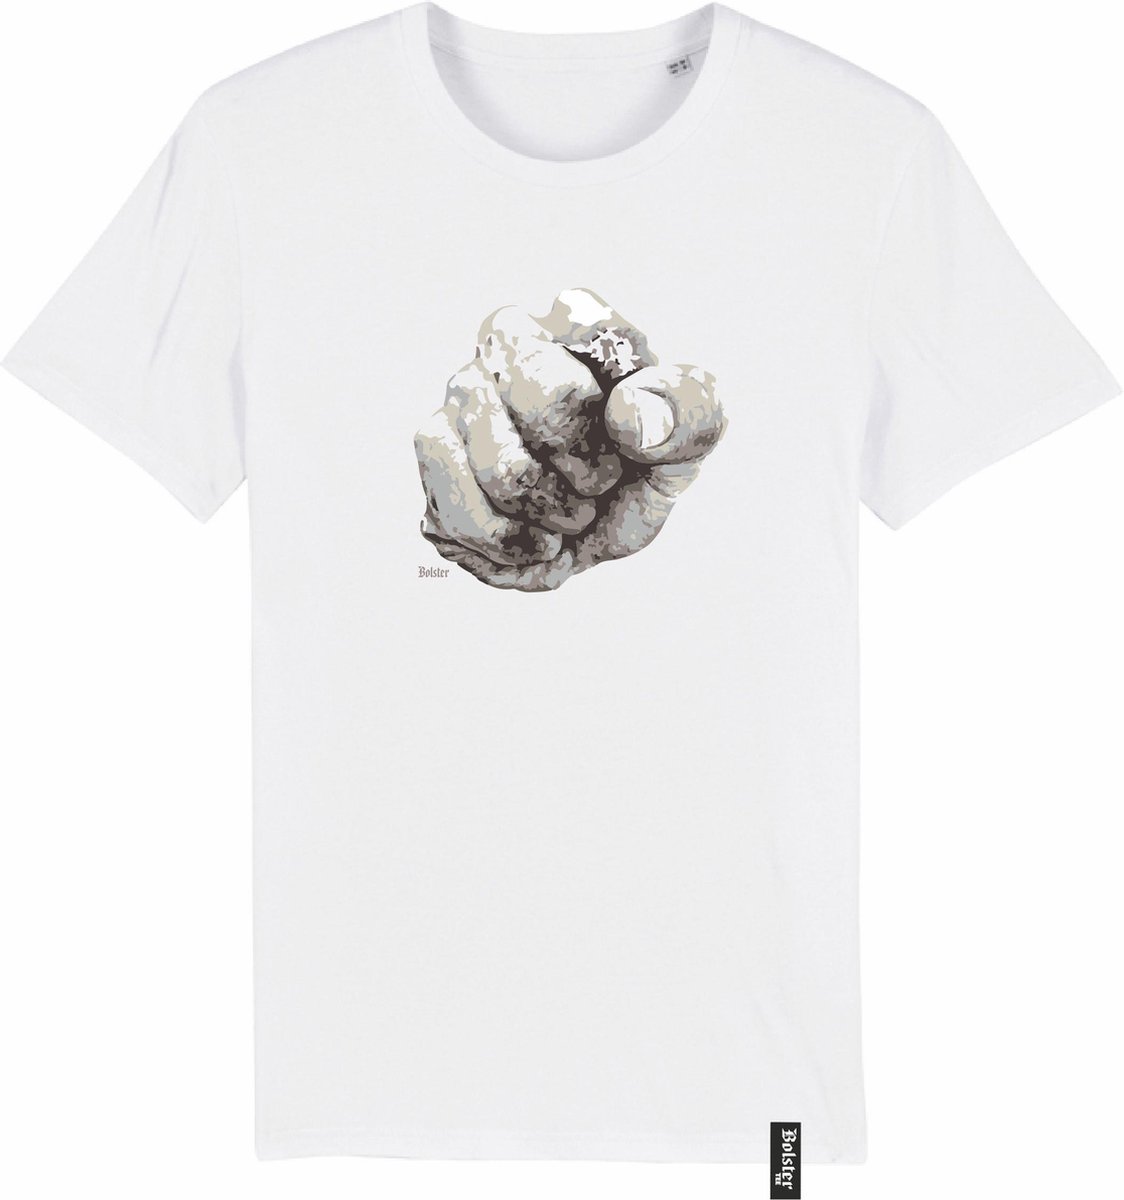 T-shirt | Bolster#0038 - Vuissie| Maat: XXXL